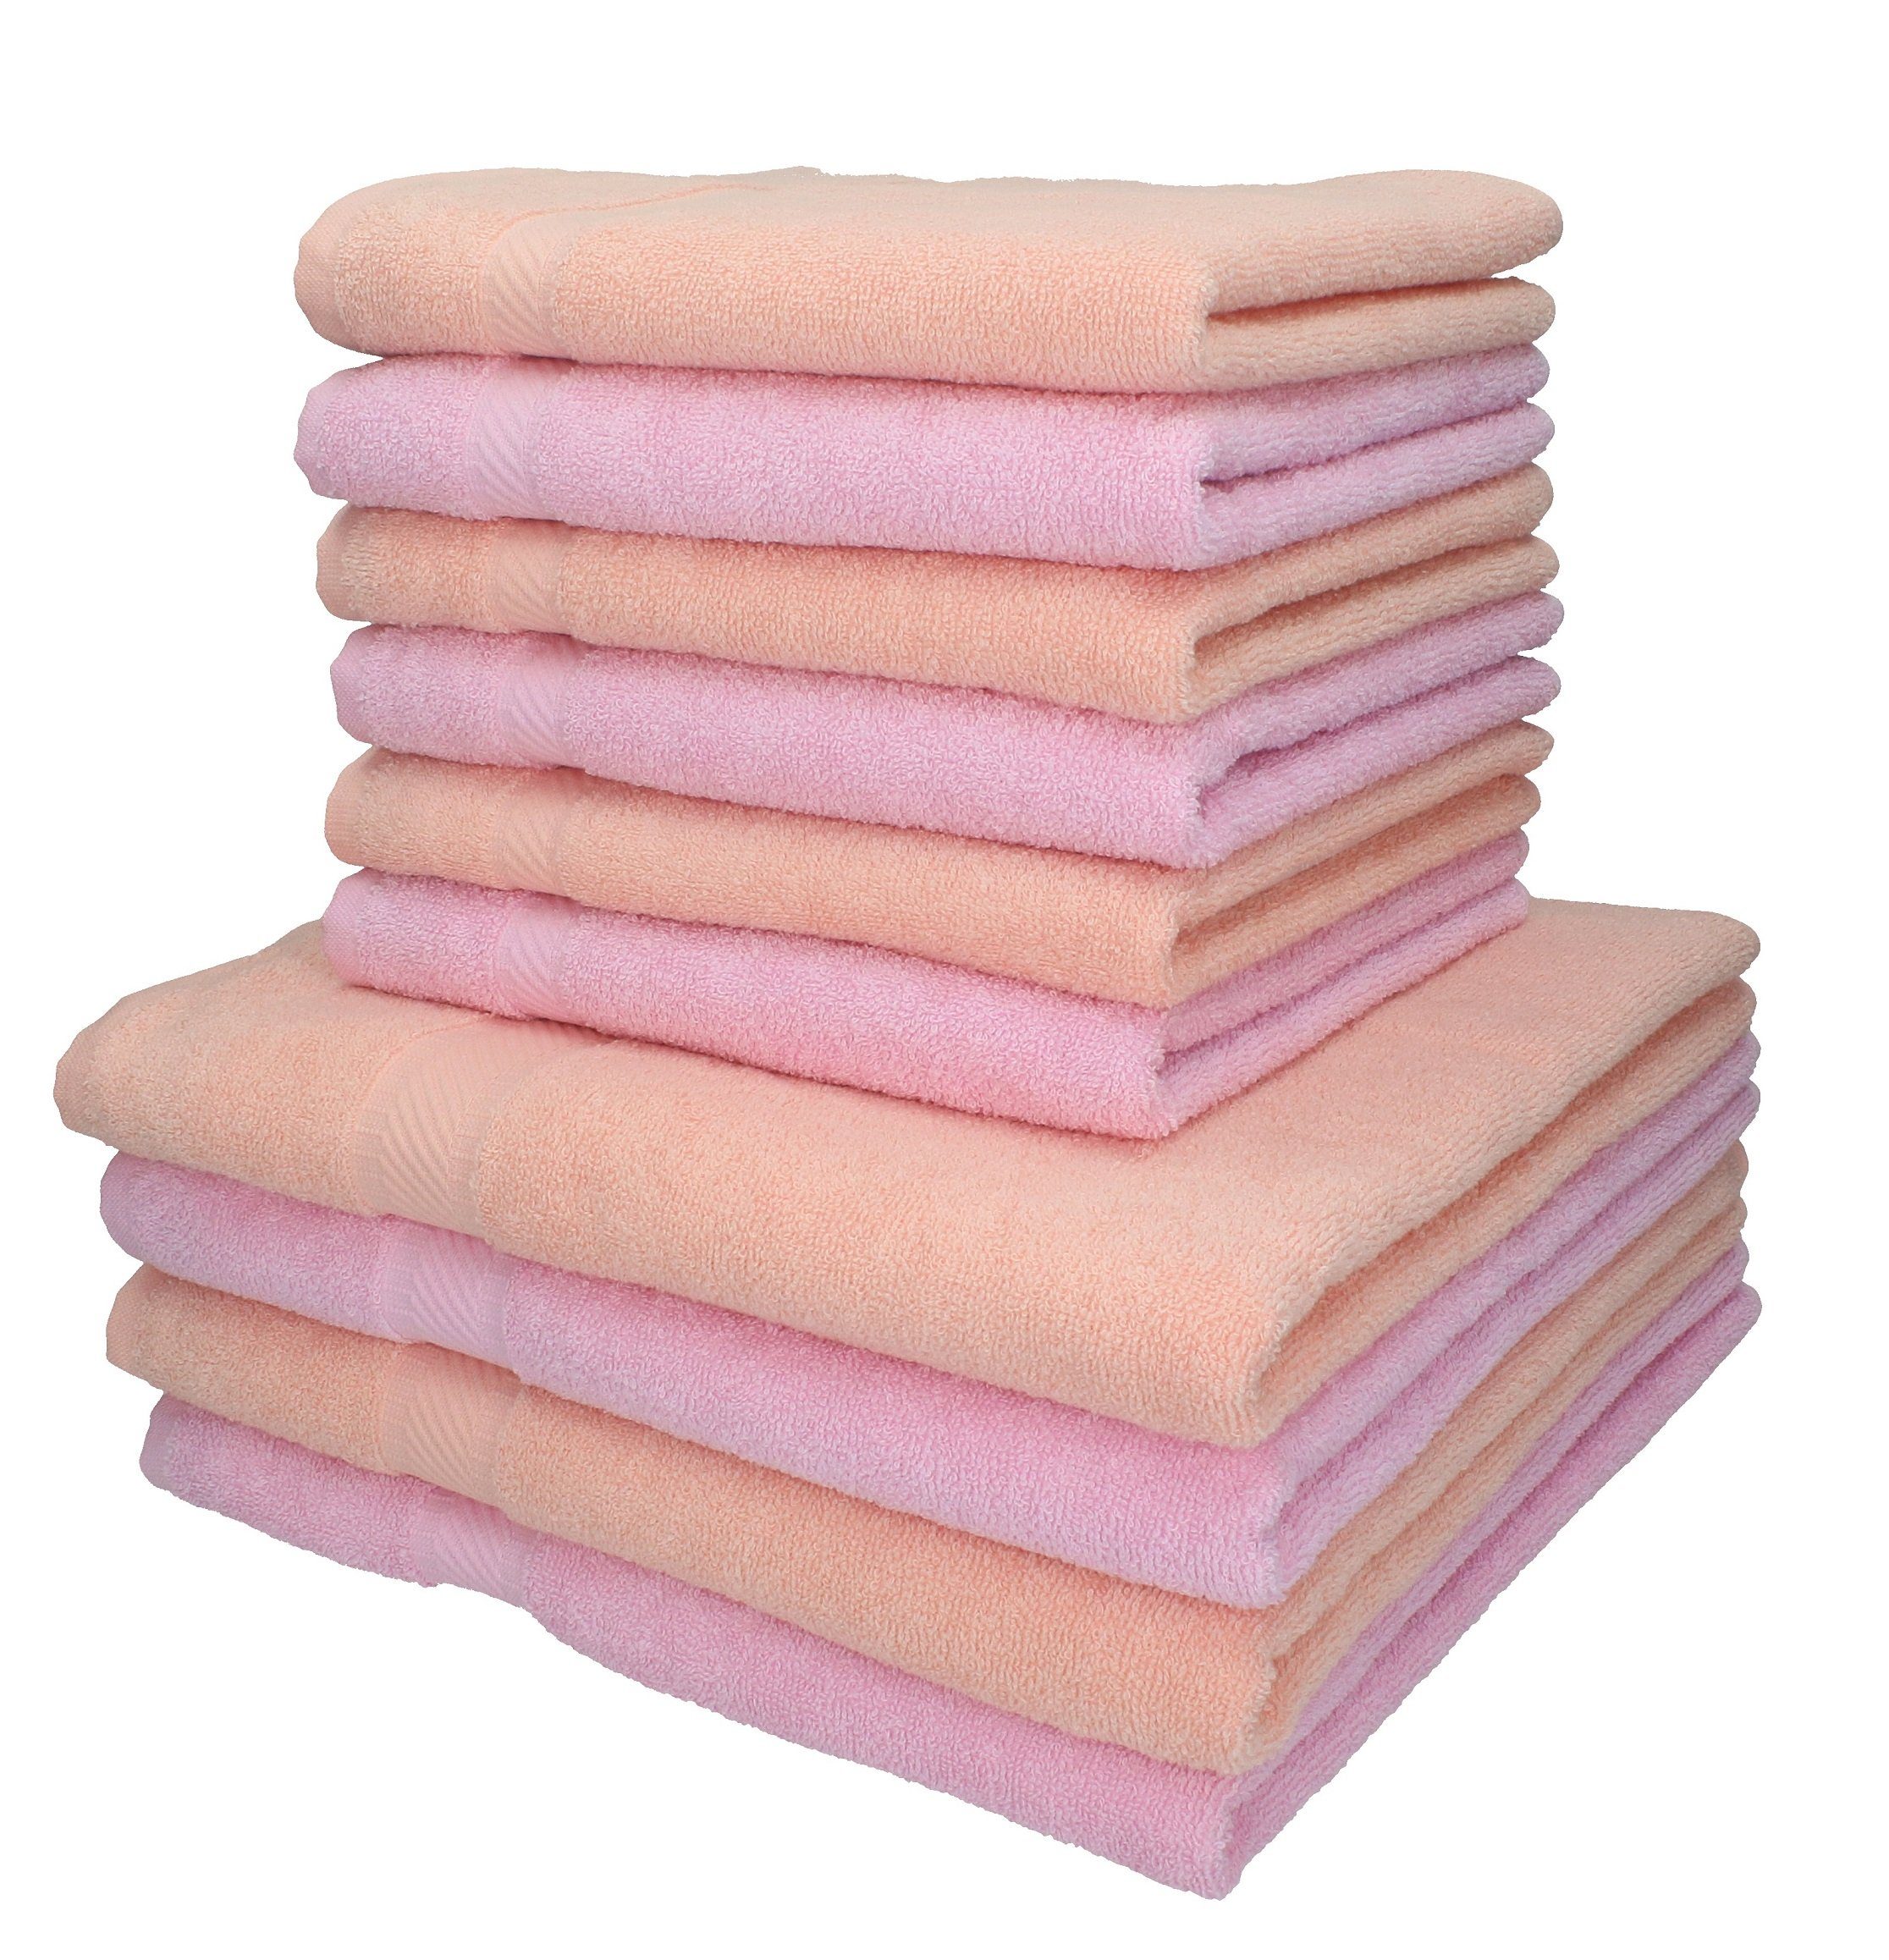 Betz Handtuch Set 10-TLG. Handtuch-Set Palermo Farbe apricot orange und rosé, 100% Bauwmolle